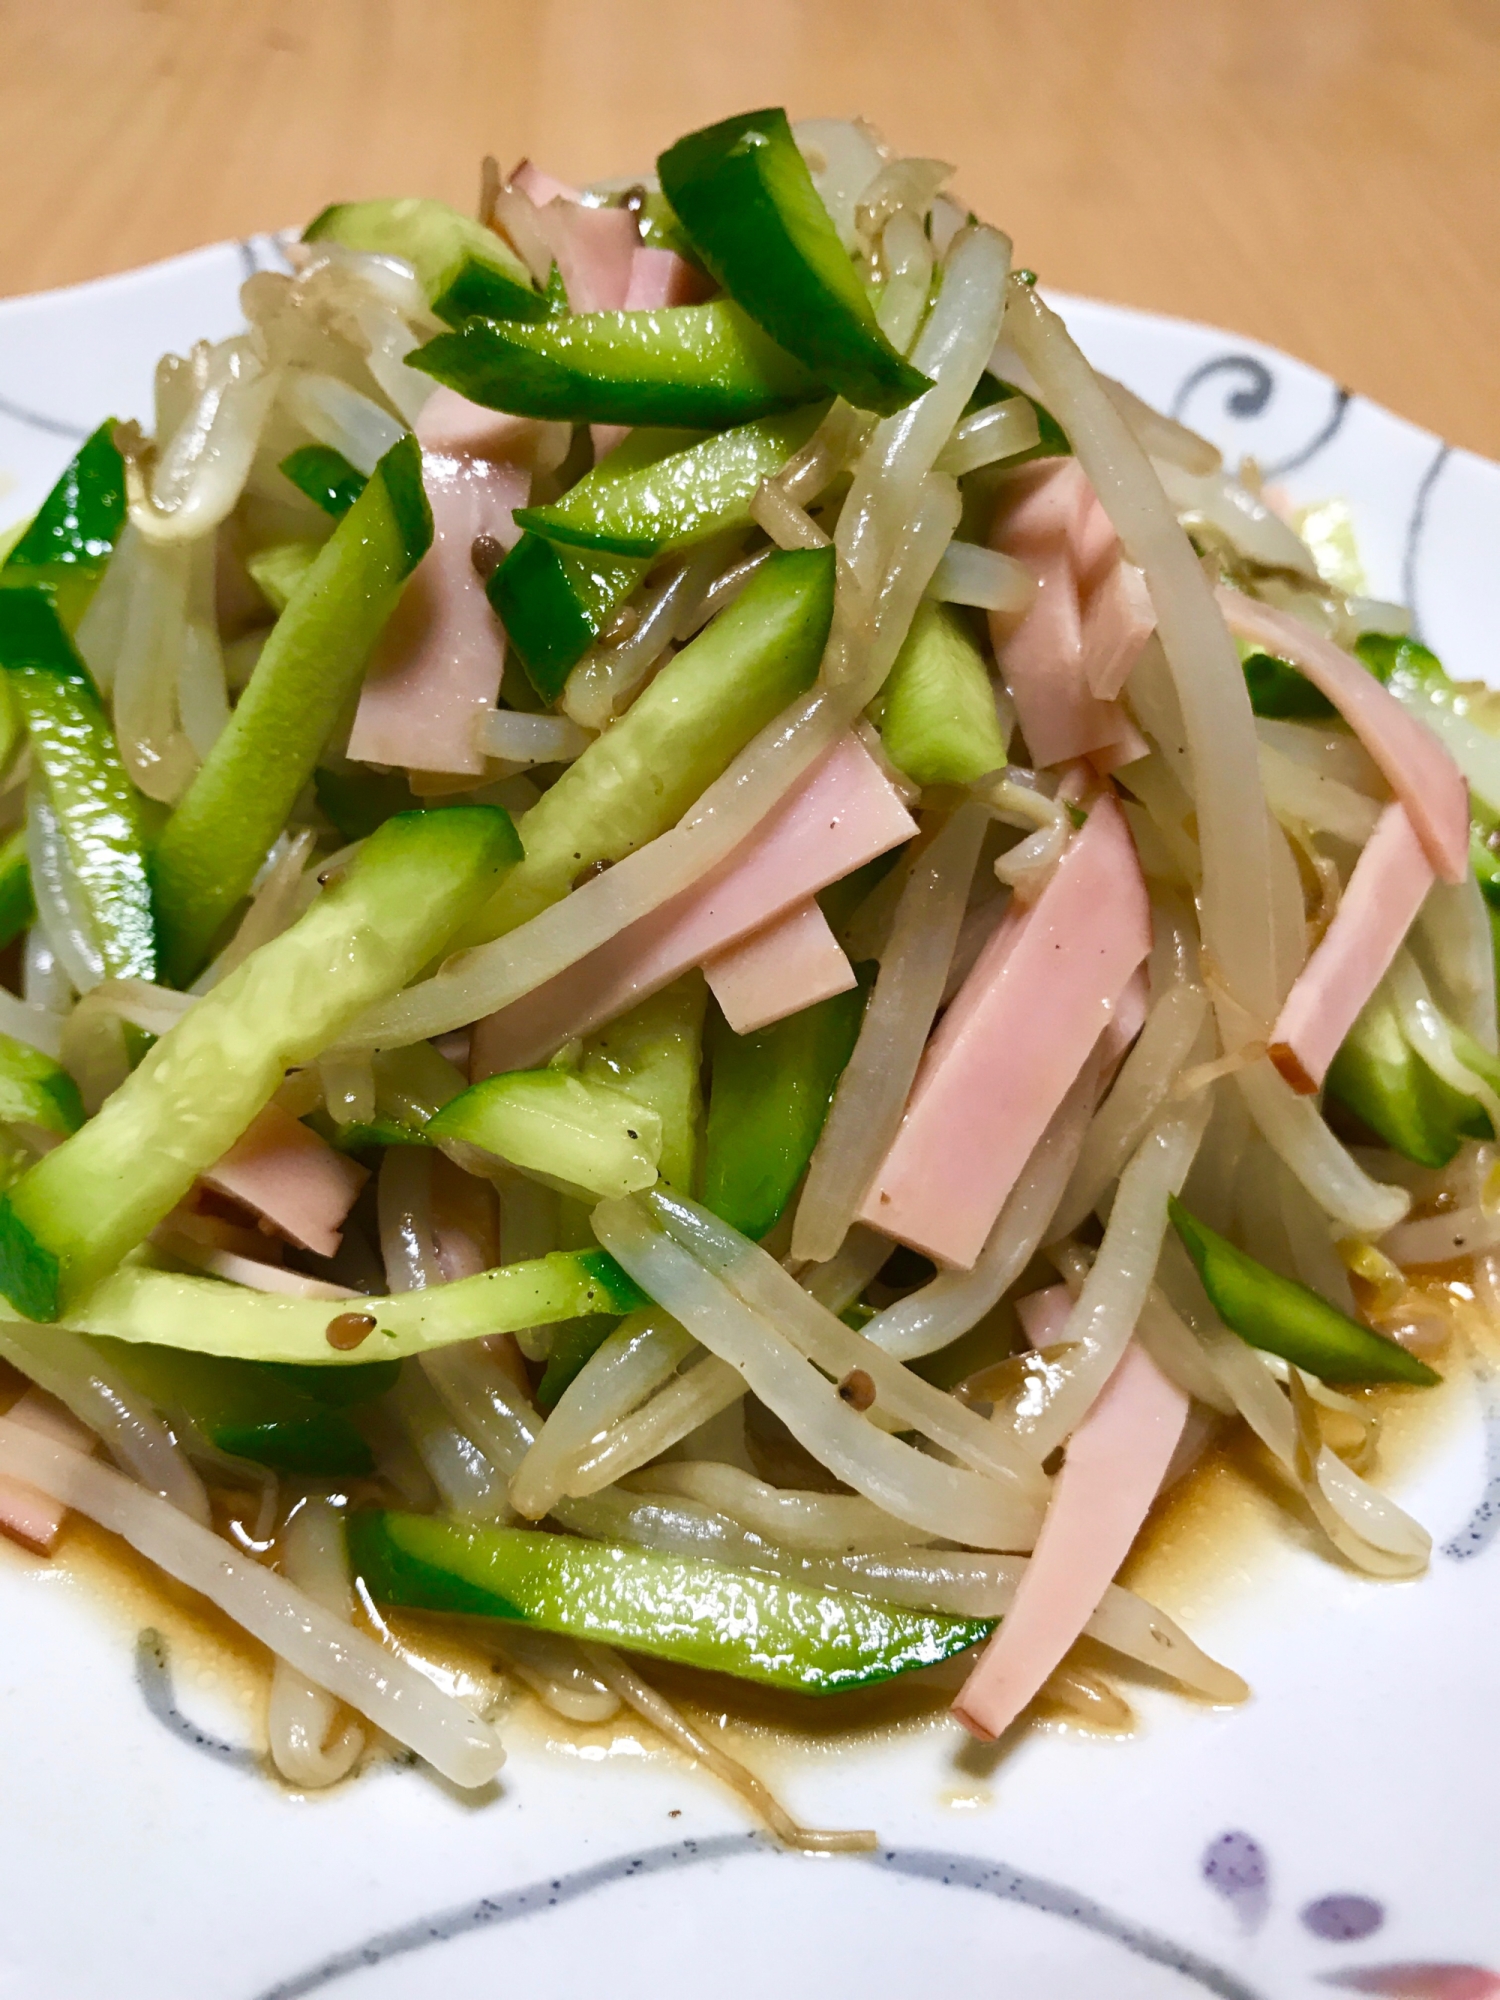 簡単中華サラダ